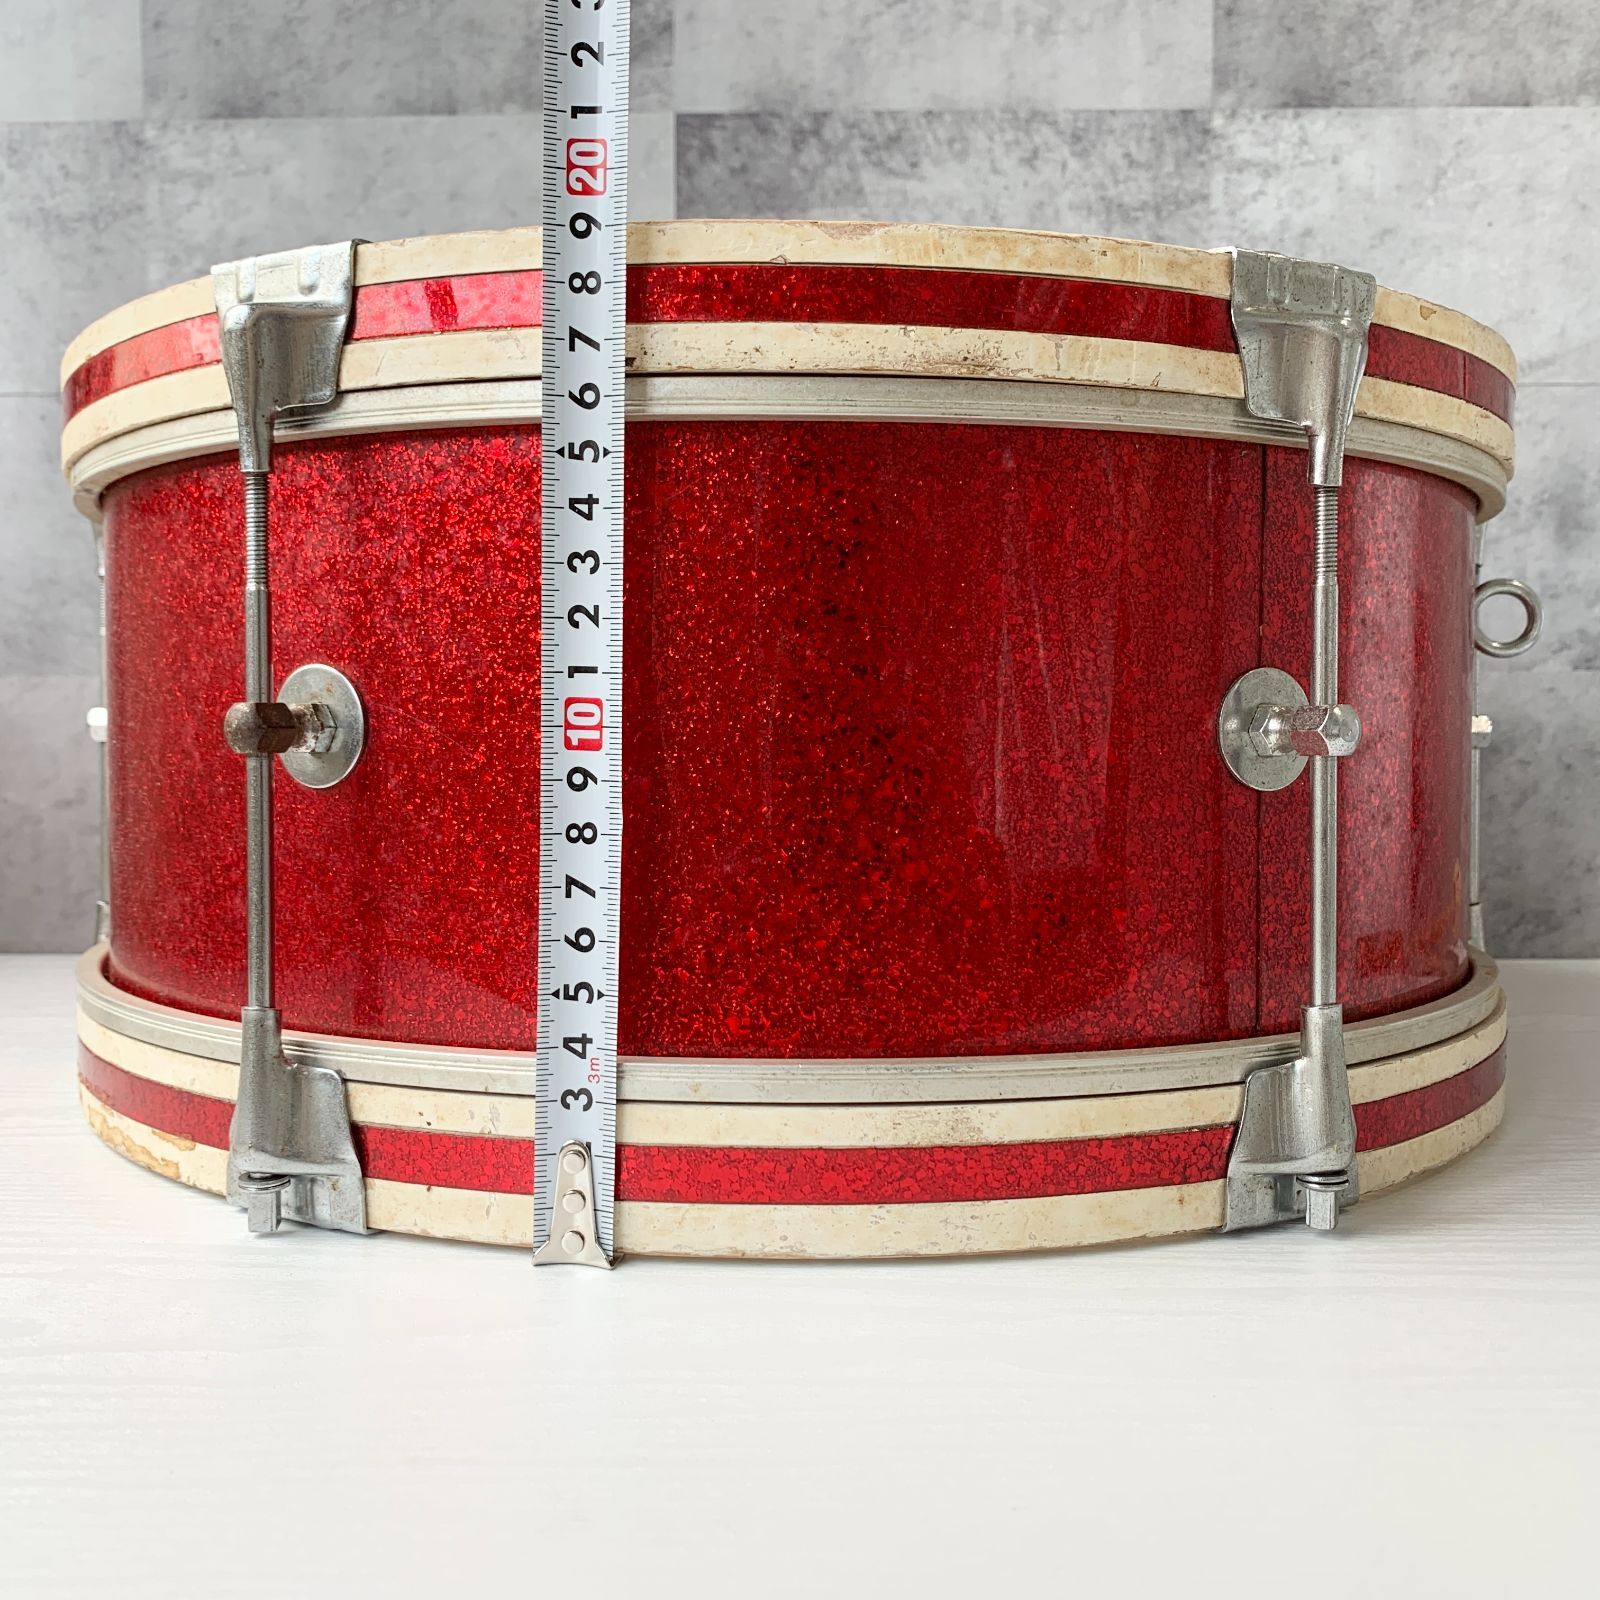 加茂市のまだまだ使えるもの】Nikkan Drums バスドラム 直径40cm 赤